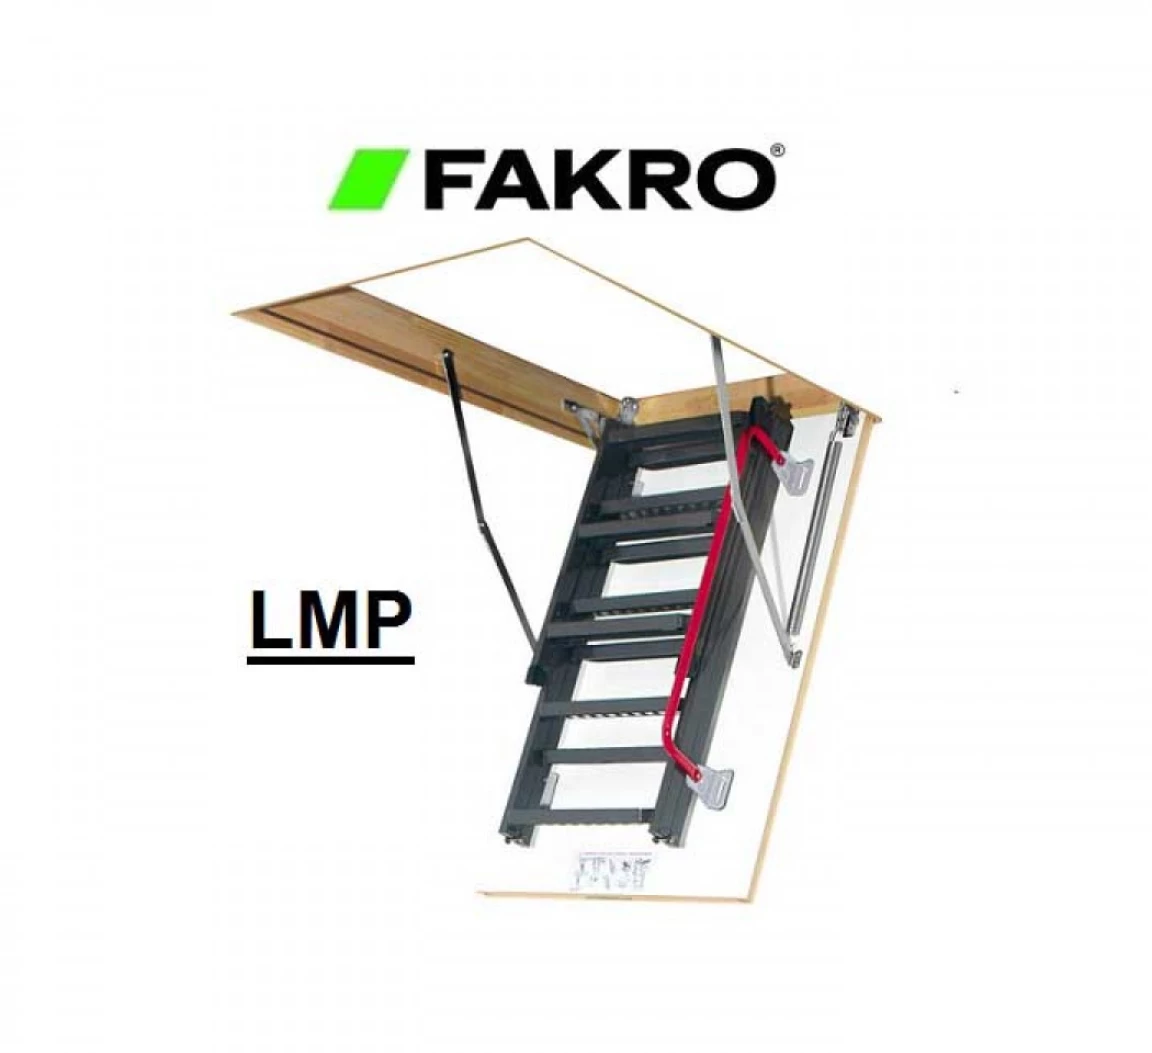 Escalier escamotable LMP avec échelle métallique pliable, haut. 366 cm, 60 cm x 144 cm